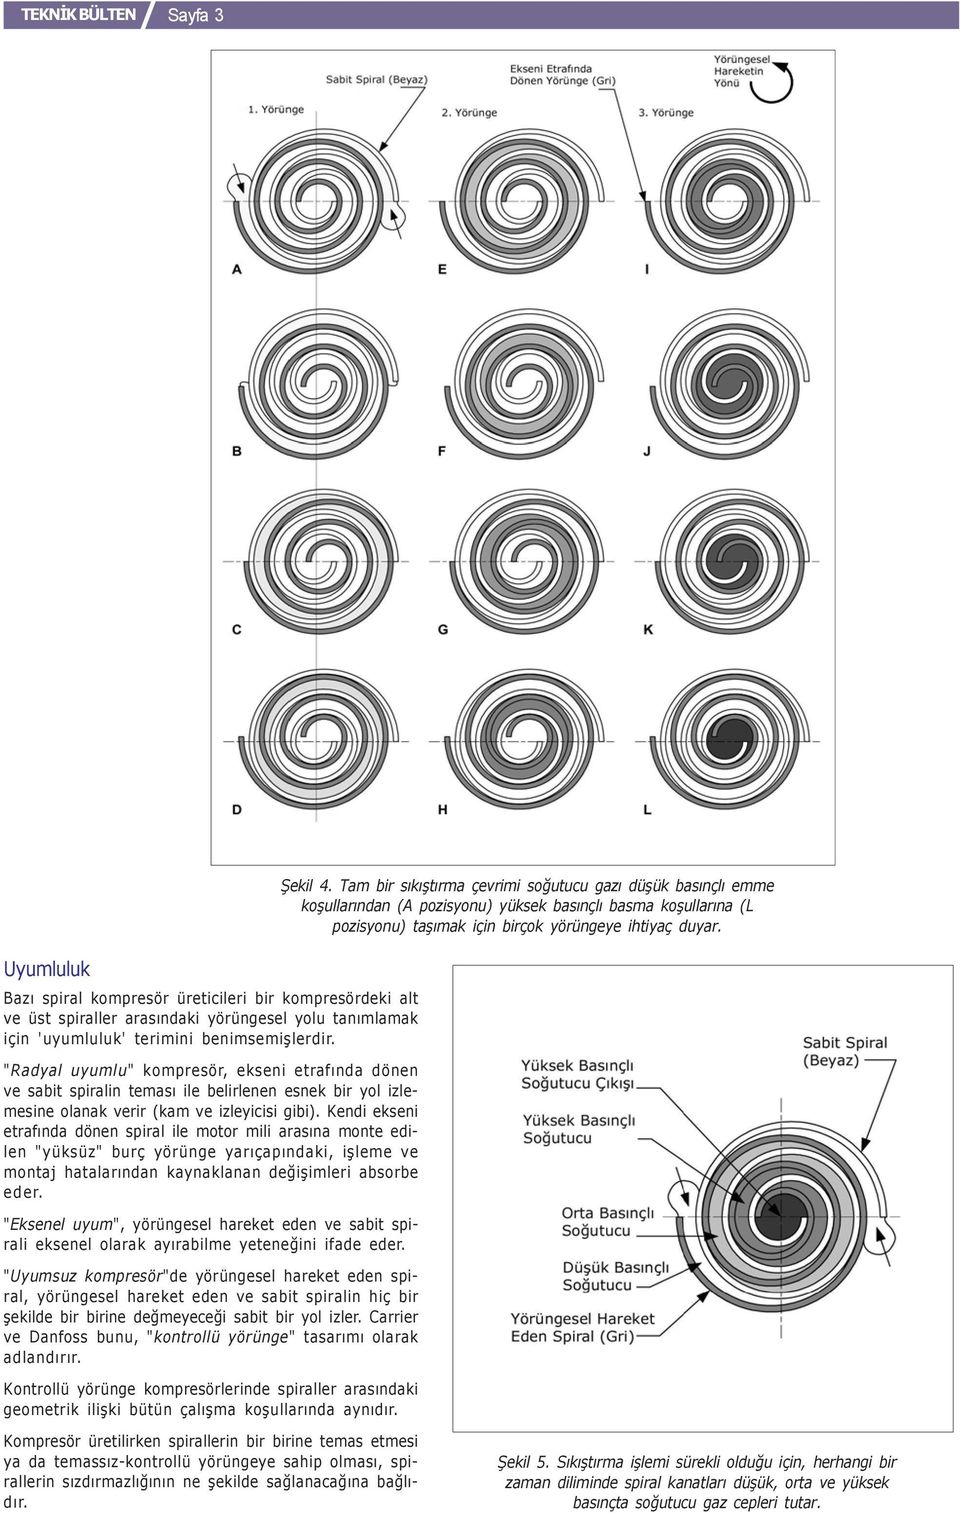 Uyumluluk Bazý spiral kompresör üreticileri bir kompresördeki alt ve üst spiraller arasýndaki yörüngesel yolu tanýmlamak için 'uyumluluk' terimini benimsemiþlerdir.